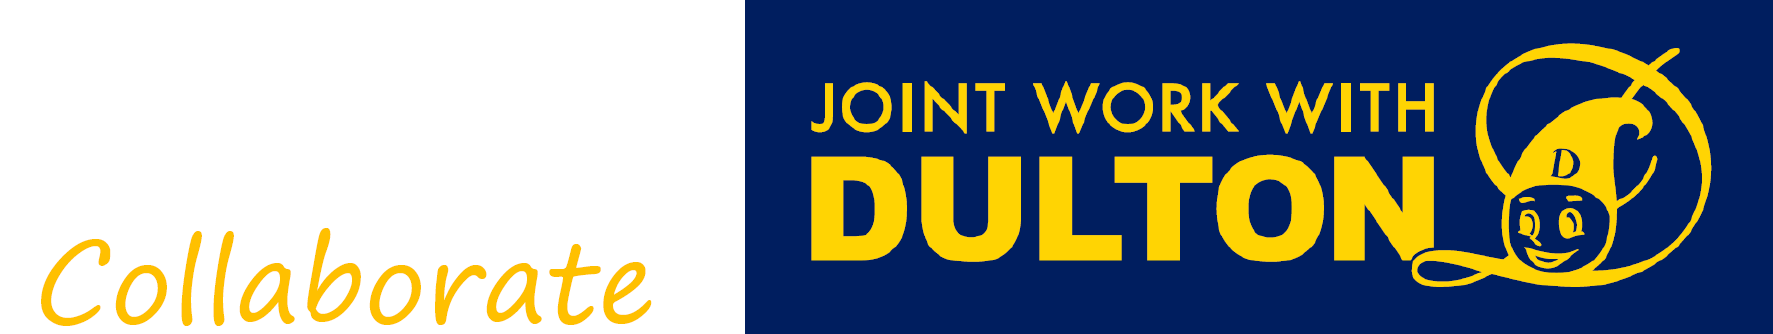 コラボレーション DULTONのロゴ